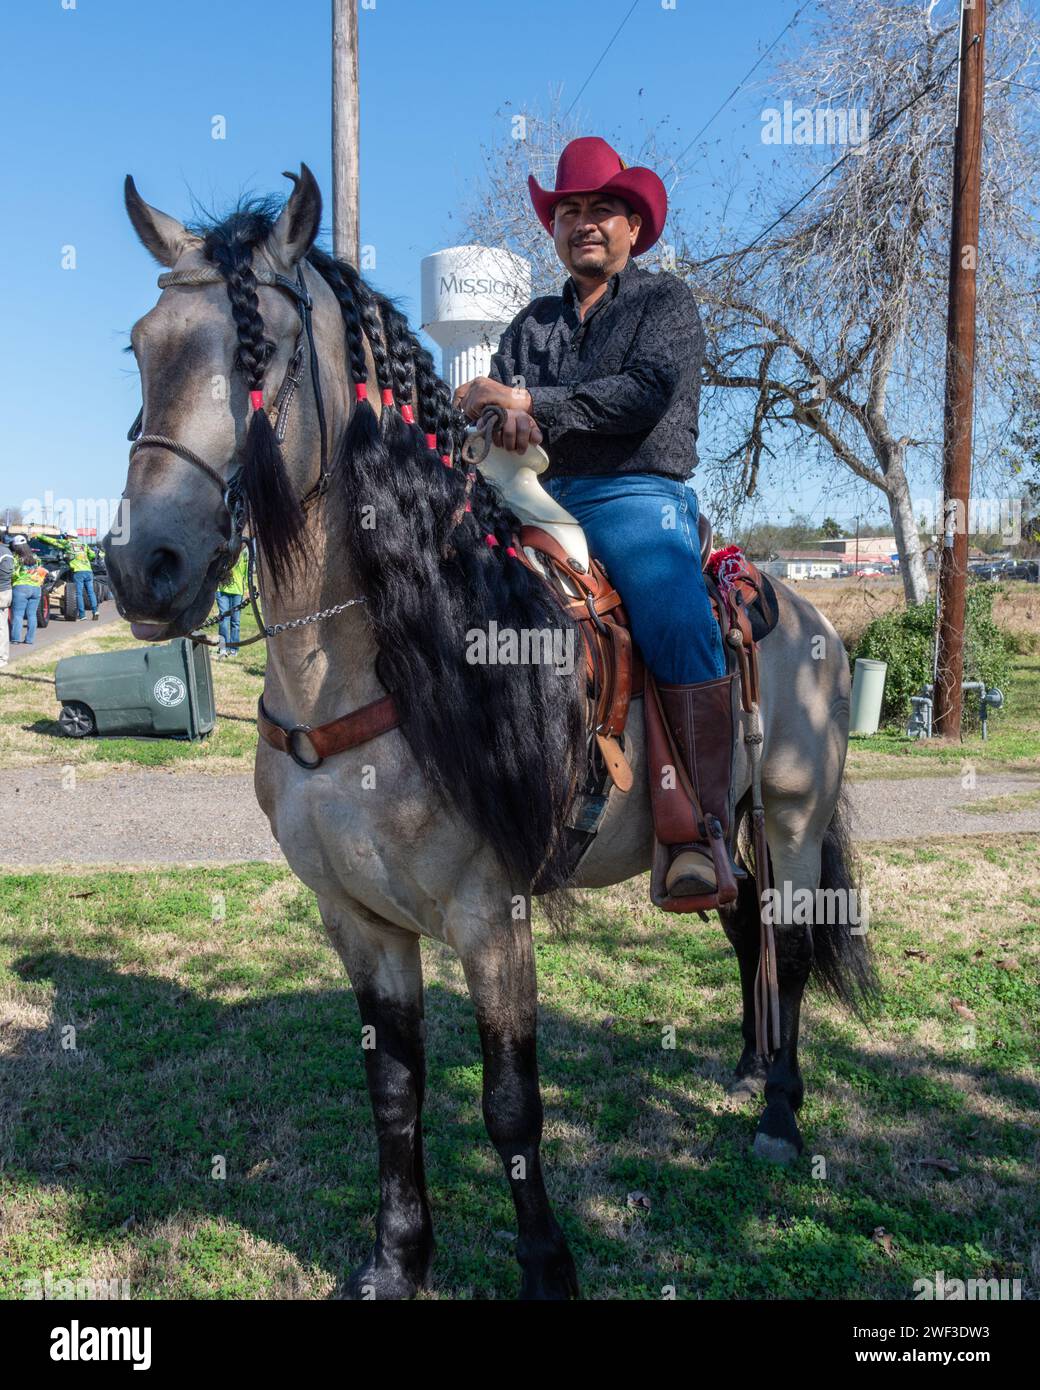 Cowboy sitzt im Sattel auf einem Pferd mit geflochtener Mähne und wartet auf den Beginn der 92. Jährlichen Texas Citrus Fiesta Parade of Oranges, Mission, Texas, USA. Stockfoto